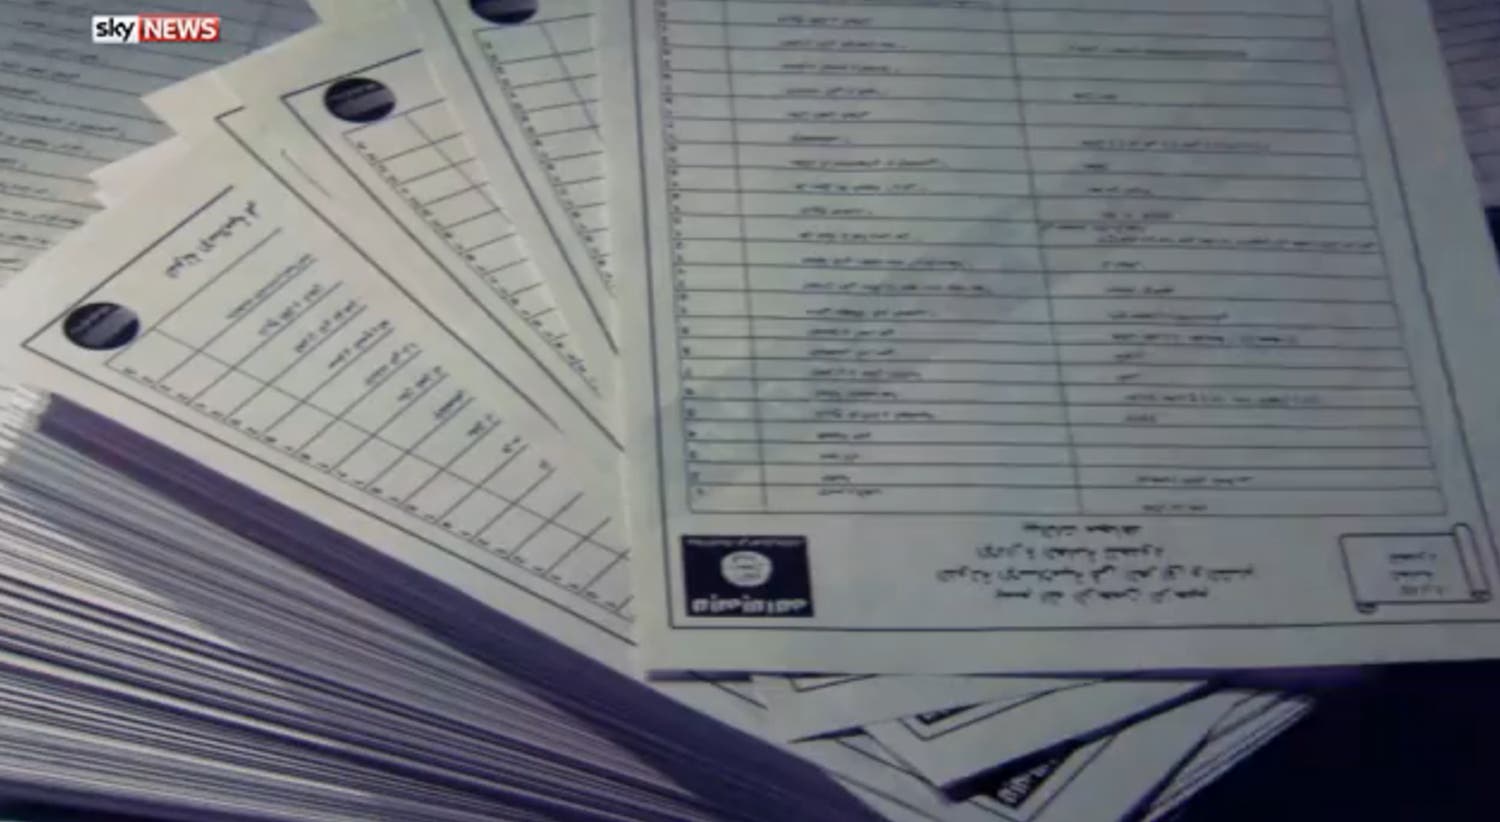 Detalhe dos ficheiros secretos dos membros do grupo Estado Islâmico